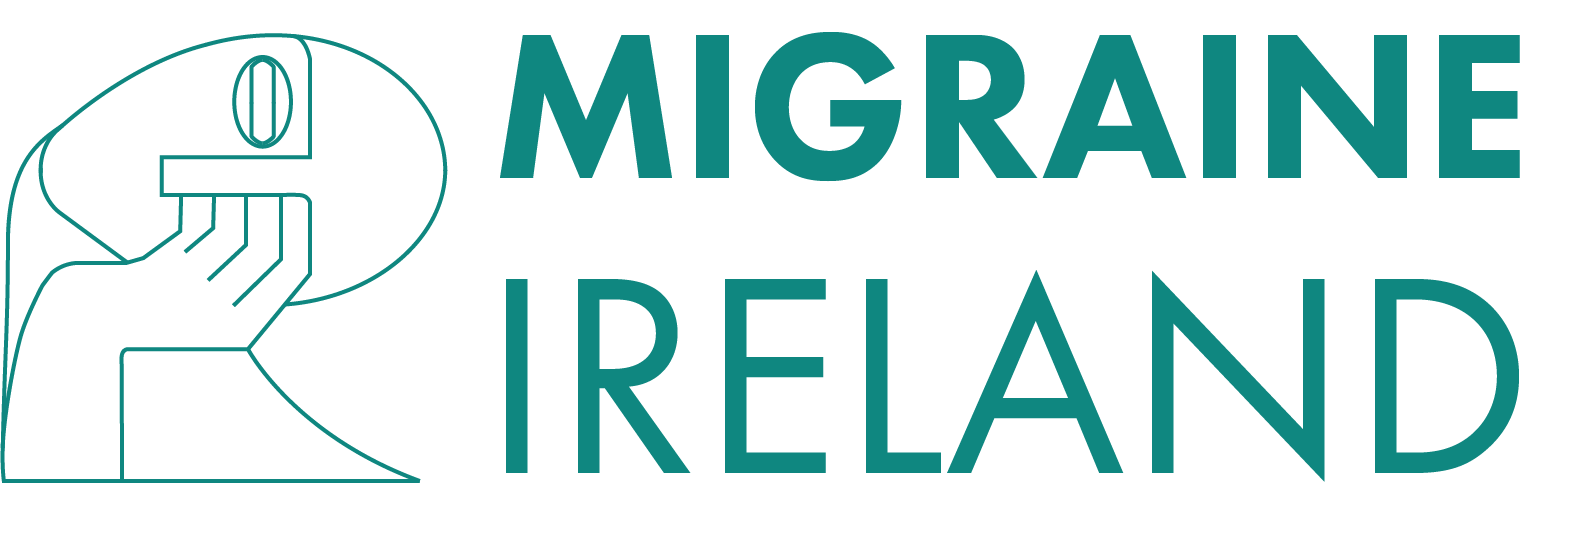 Migraine Ireland